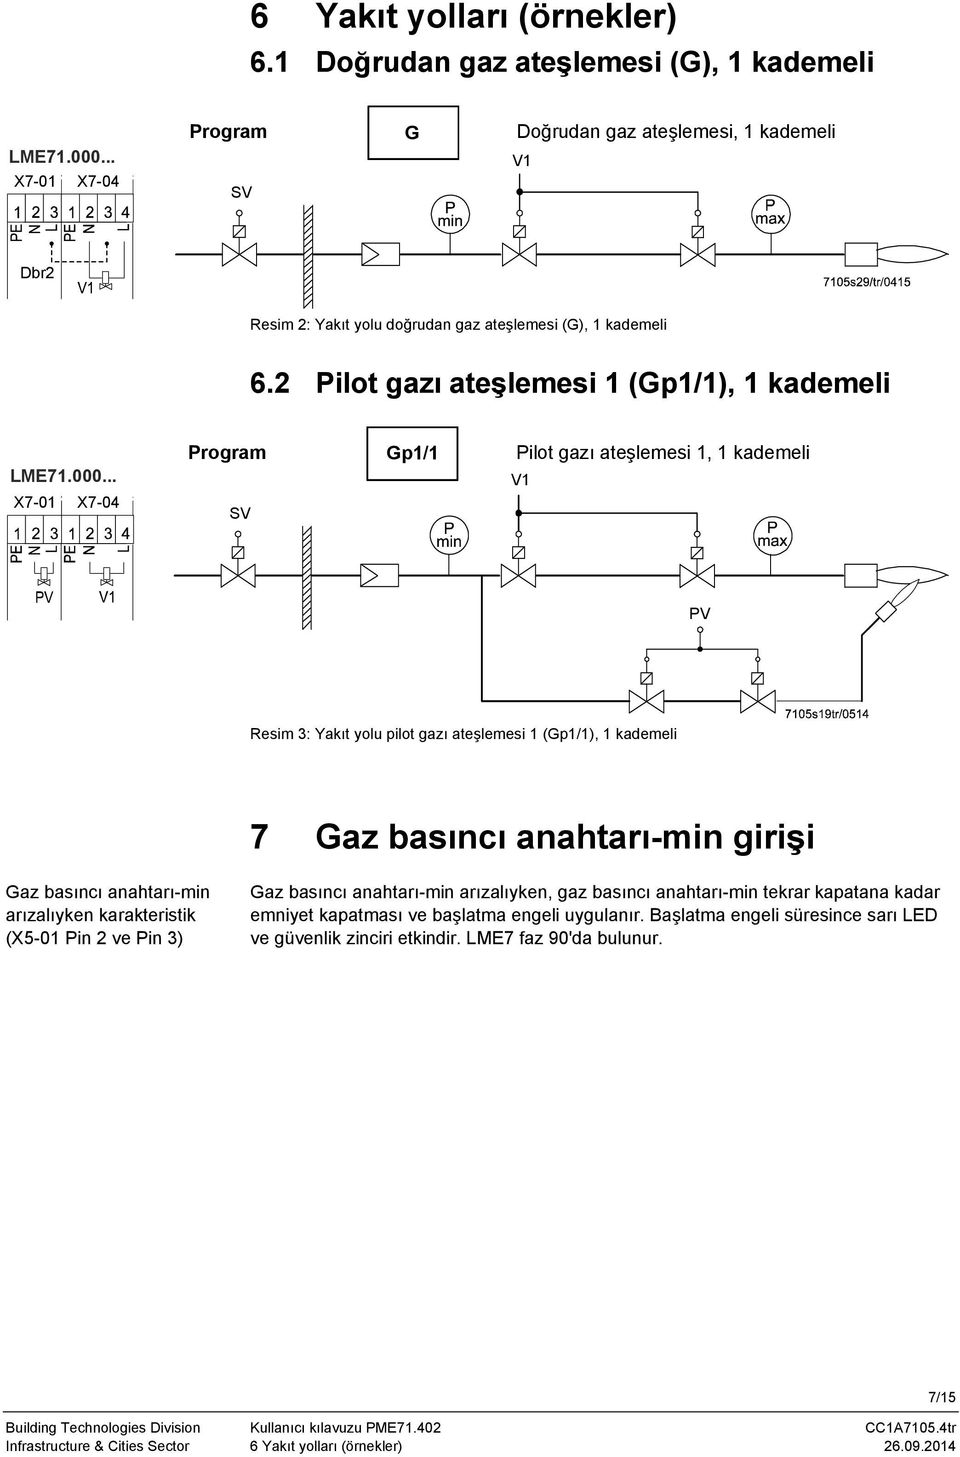 .. X7-0 X7-04 Program Gp/ Pilot gazı ateşlemesi, kademeli SV V PV Resim 3: Yakıt yolu pilot gazı ateşlemesi (Gp/), kademeli 7 Gaz basıncı anahtarı-min girişi Gaz basıncı anahtarı-min arızalıyken